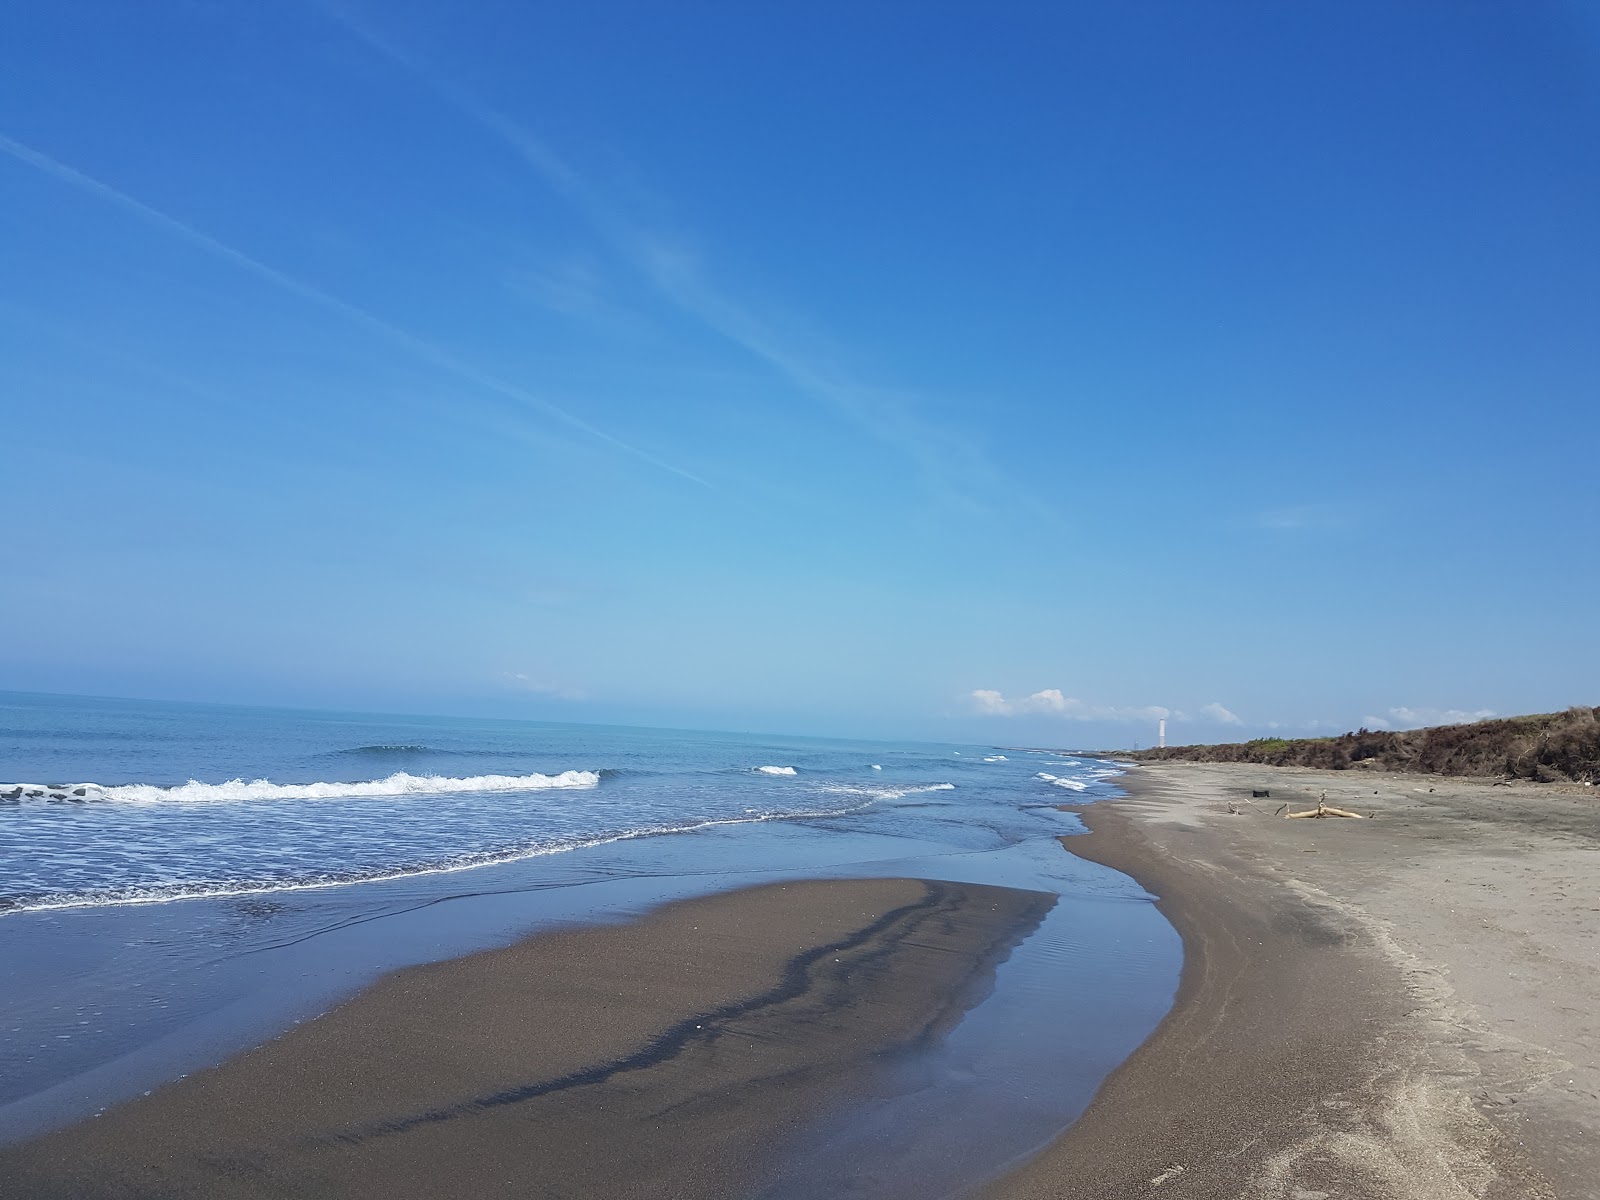 Fotografie cu Montalto Marina beach II cu o suprafață de nisip maro